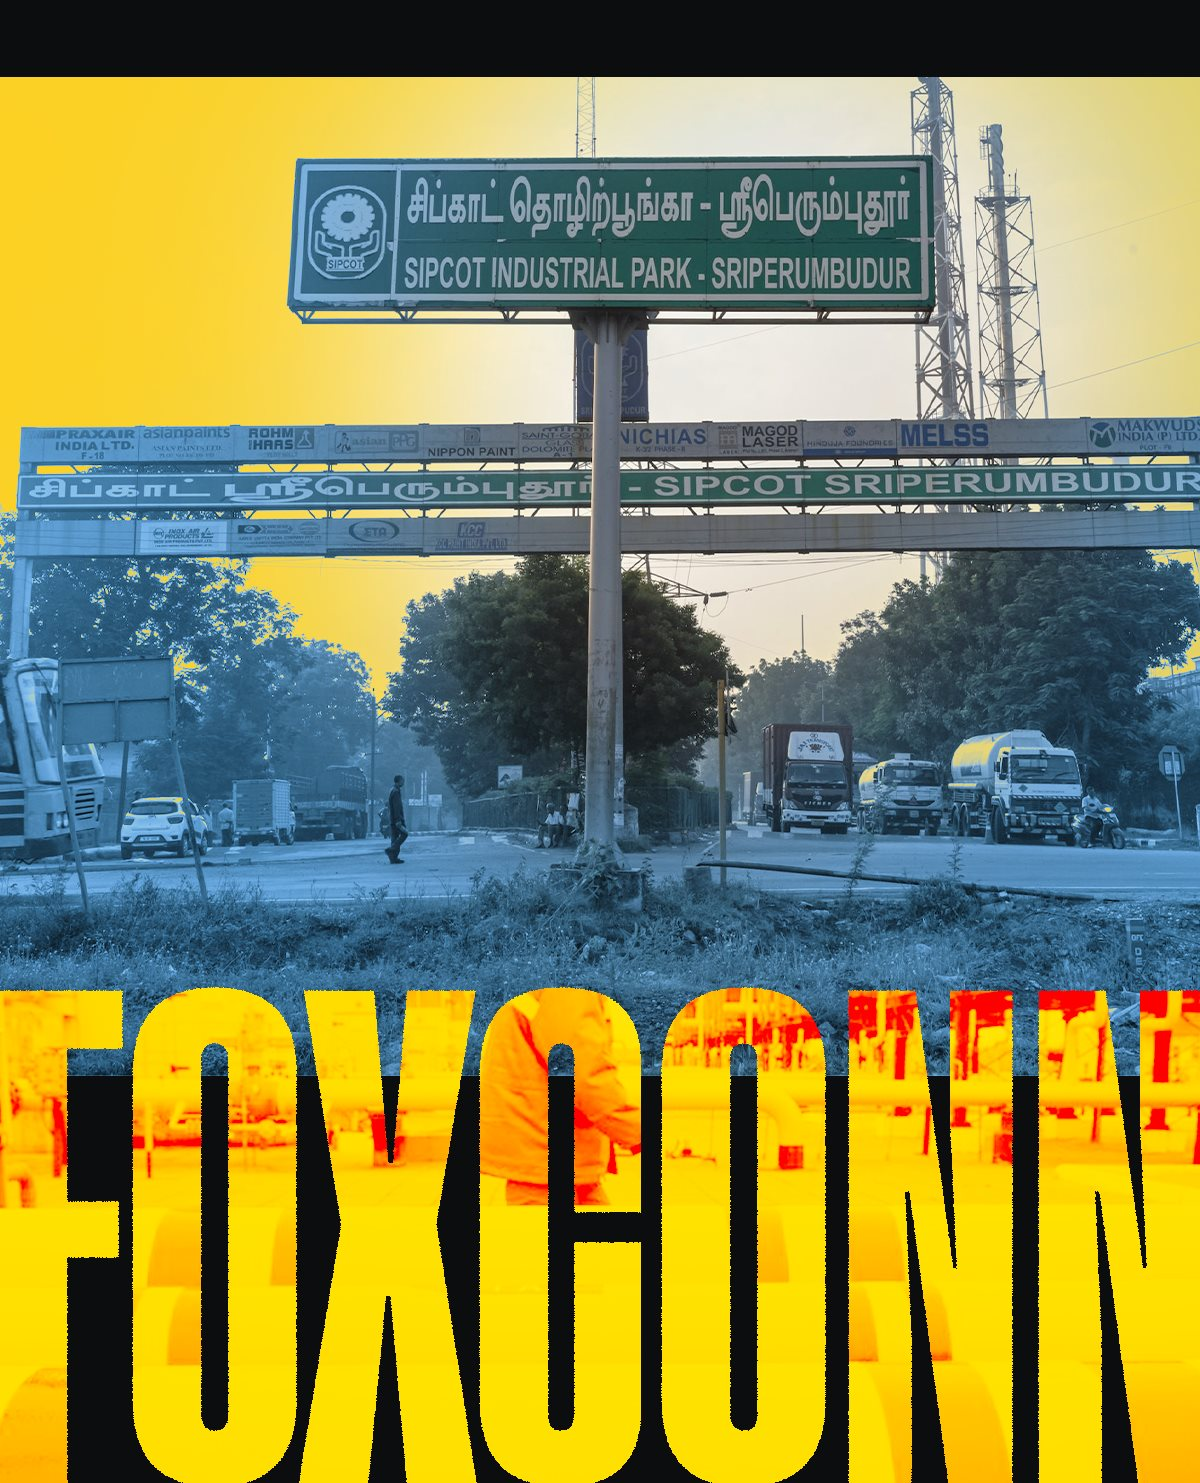 ‘Cú sốc’ văn hóa của Foxconn tại Ấn Độ: Công nhân địa phương khó giao tiếp, ghét chịu áp lực, kỹ sư nước ngoài phải ăn KFC, McDonald's vì không hợp khẩu vị - Ảnh 2.